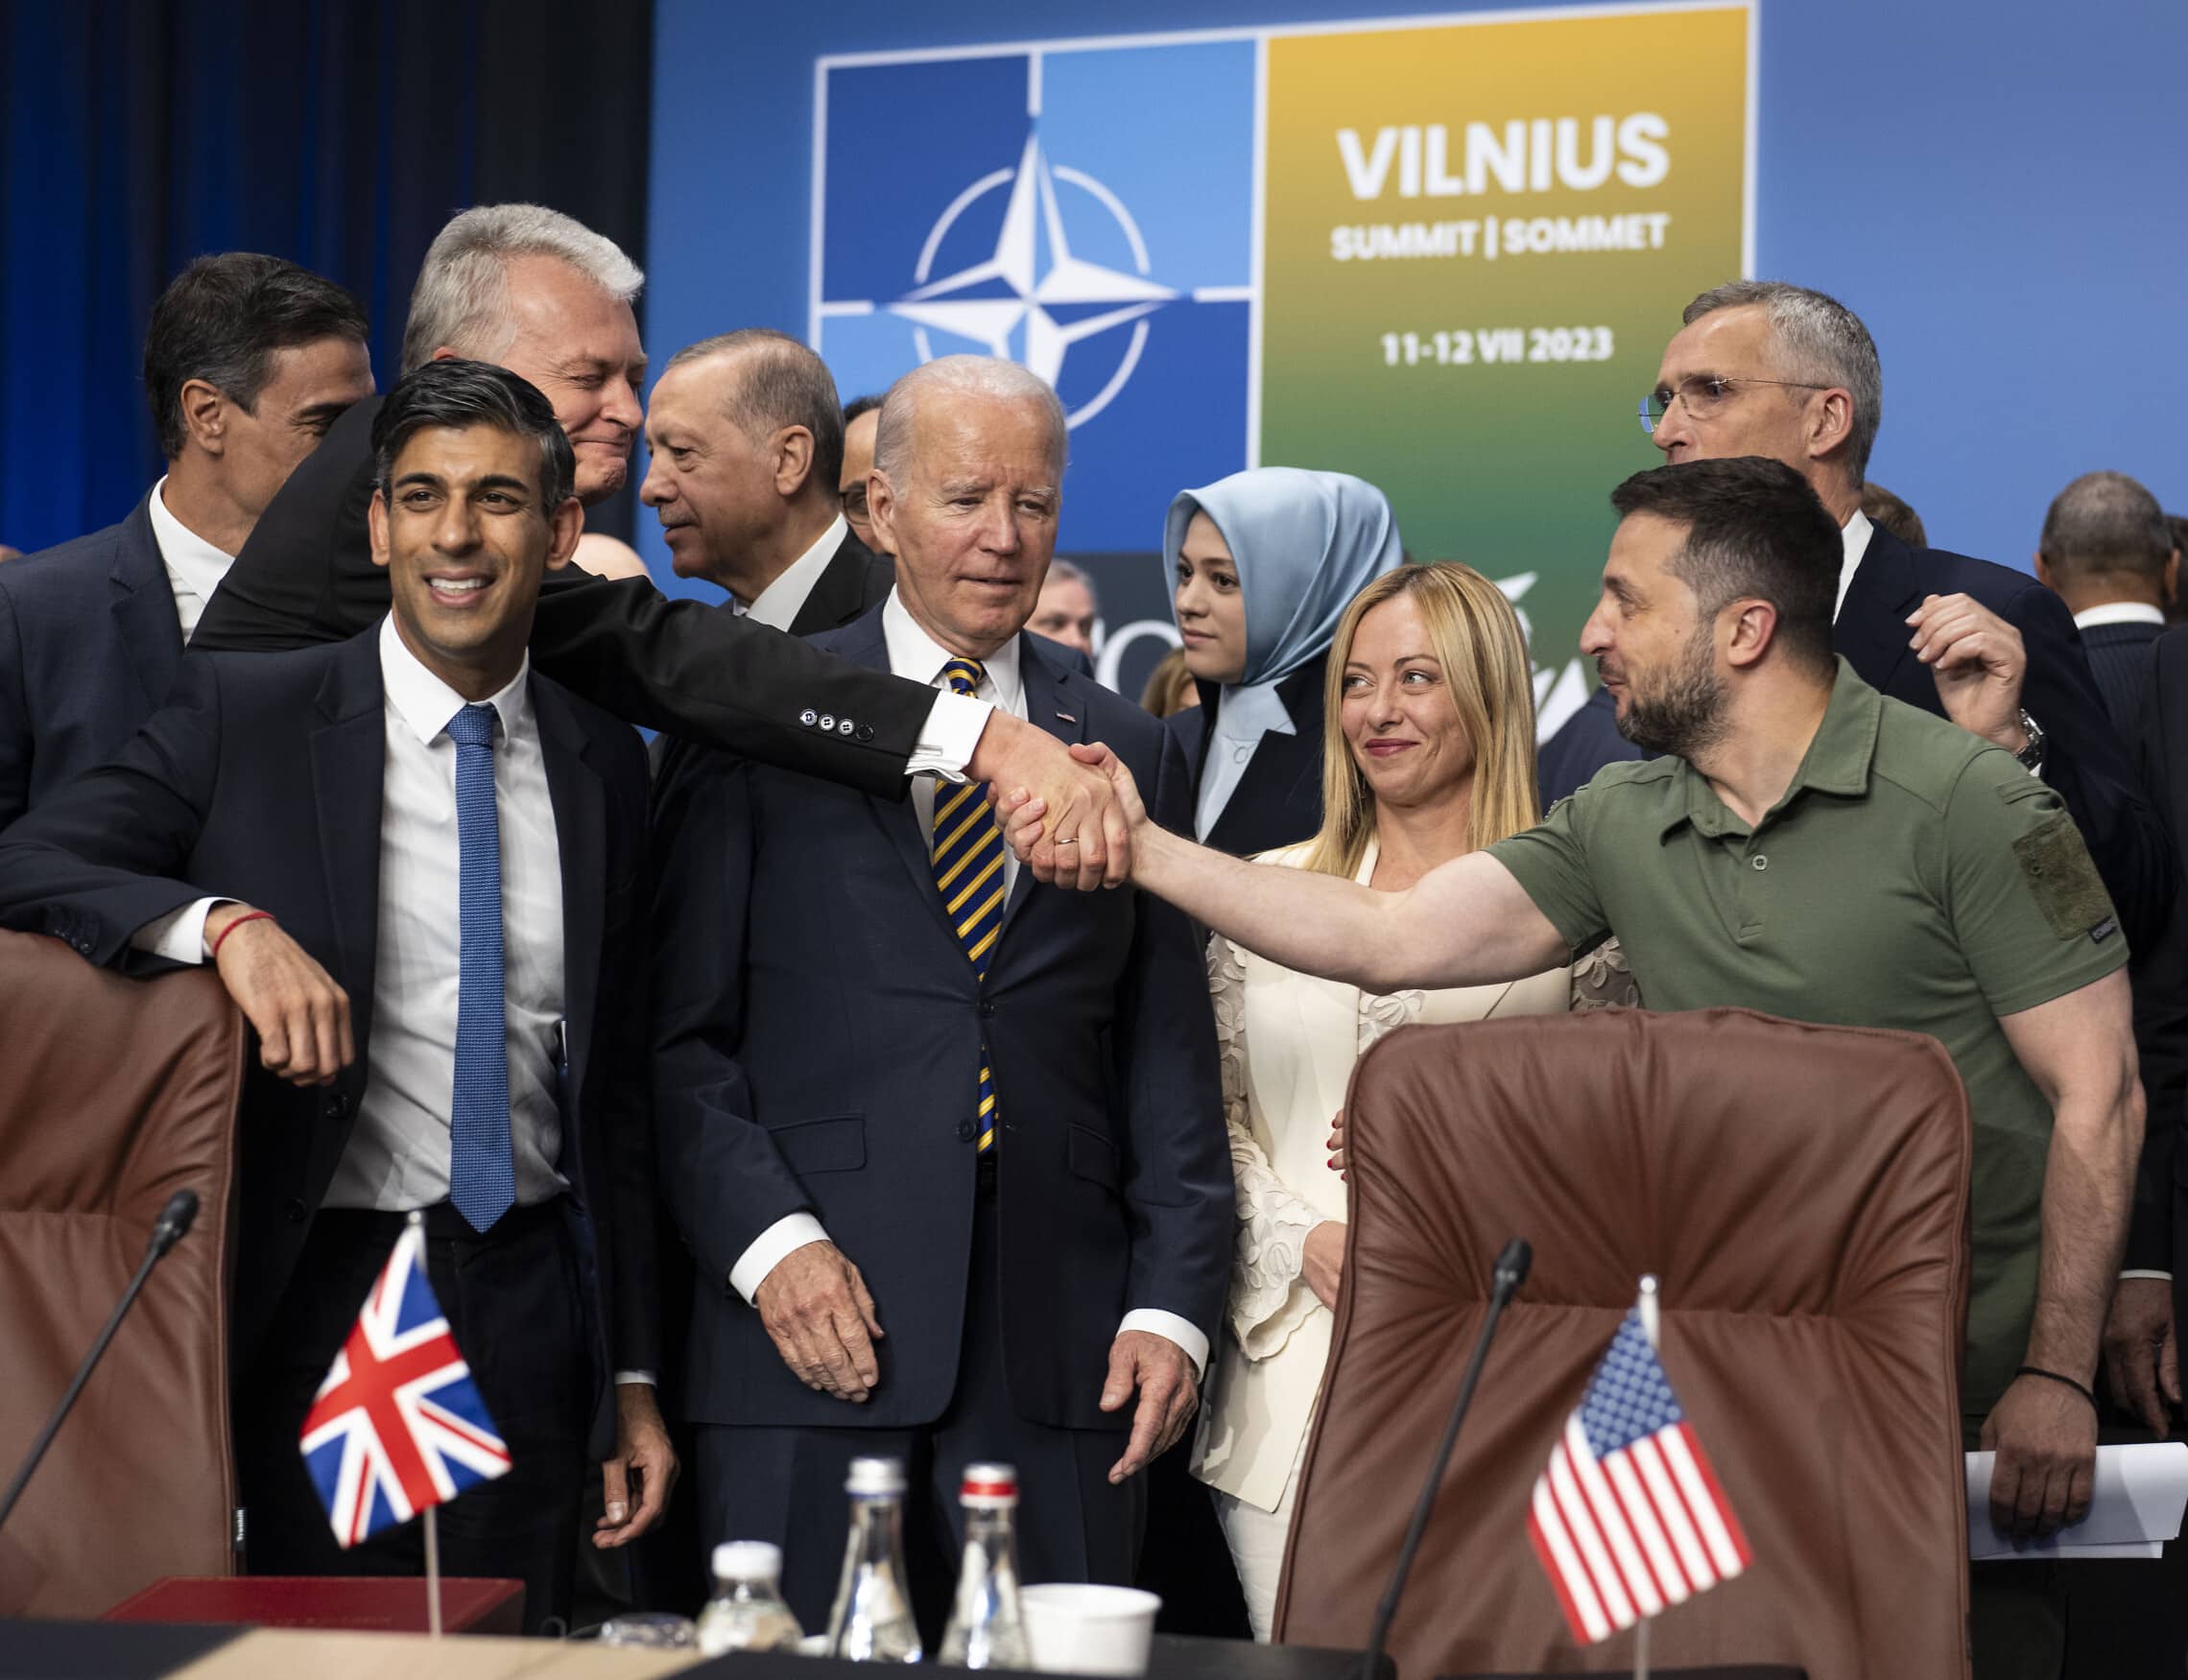 נשיא אוקראינה וולודימיר זלנסקי לוחץ את ידו של נשיא ליטא, המאחרת את פסגת נאט&quot;ו, עם מנהיגי העולם על הבמה &#8211; ביניהם נשיא ארה&quot;ב ג&#039;ו ביידן וראש ממשלת בריטניה רישי סונאק, 12 ביולי 2023 (צילום: Doug Mills/Pool via AP)